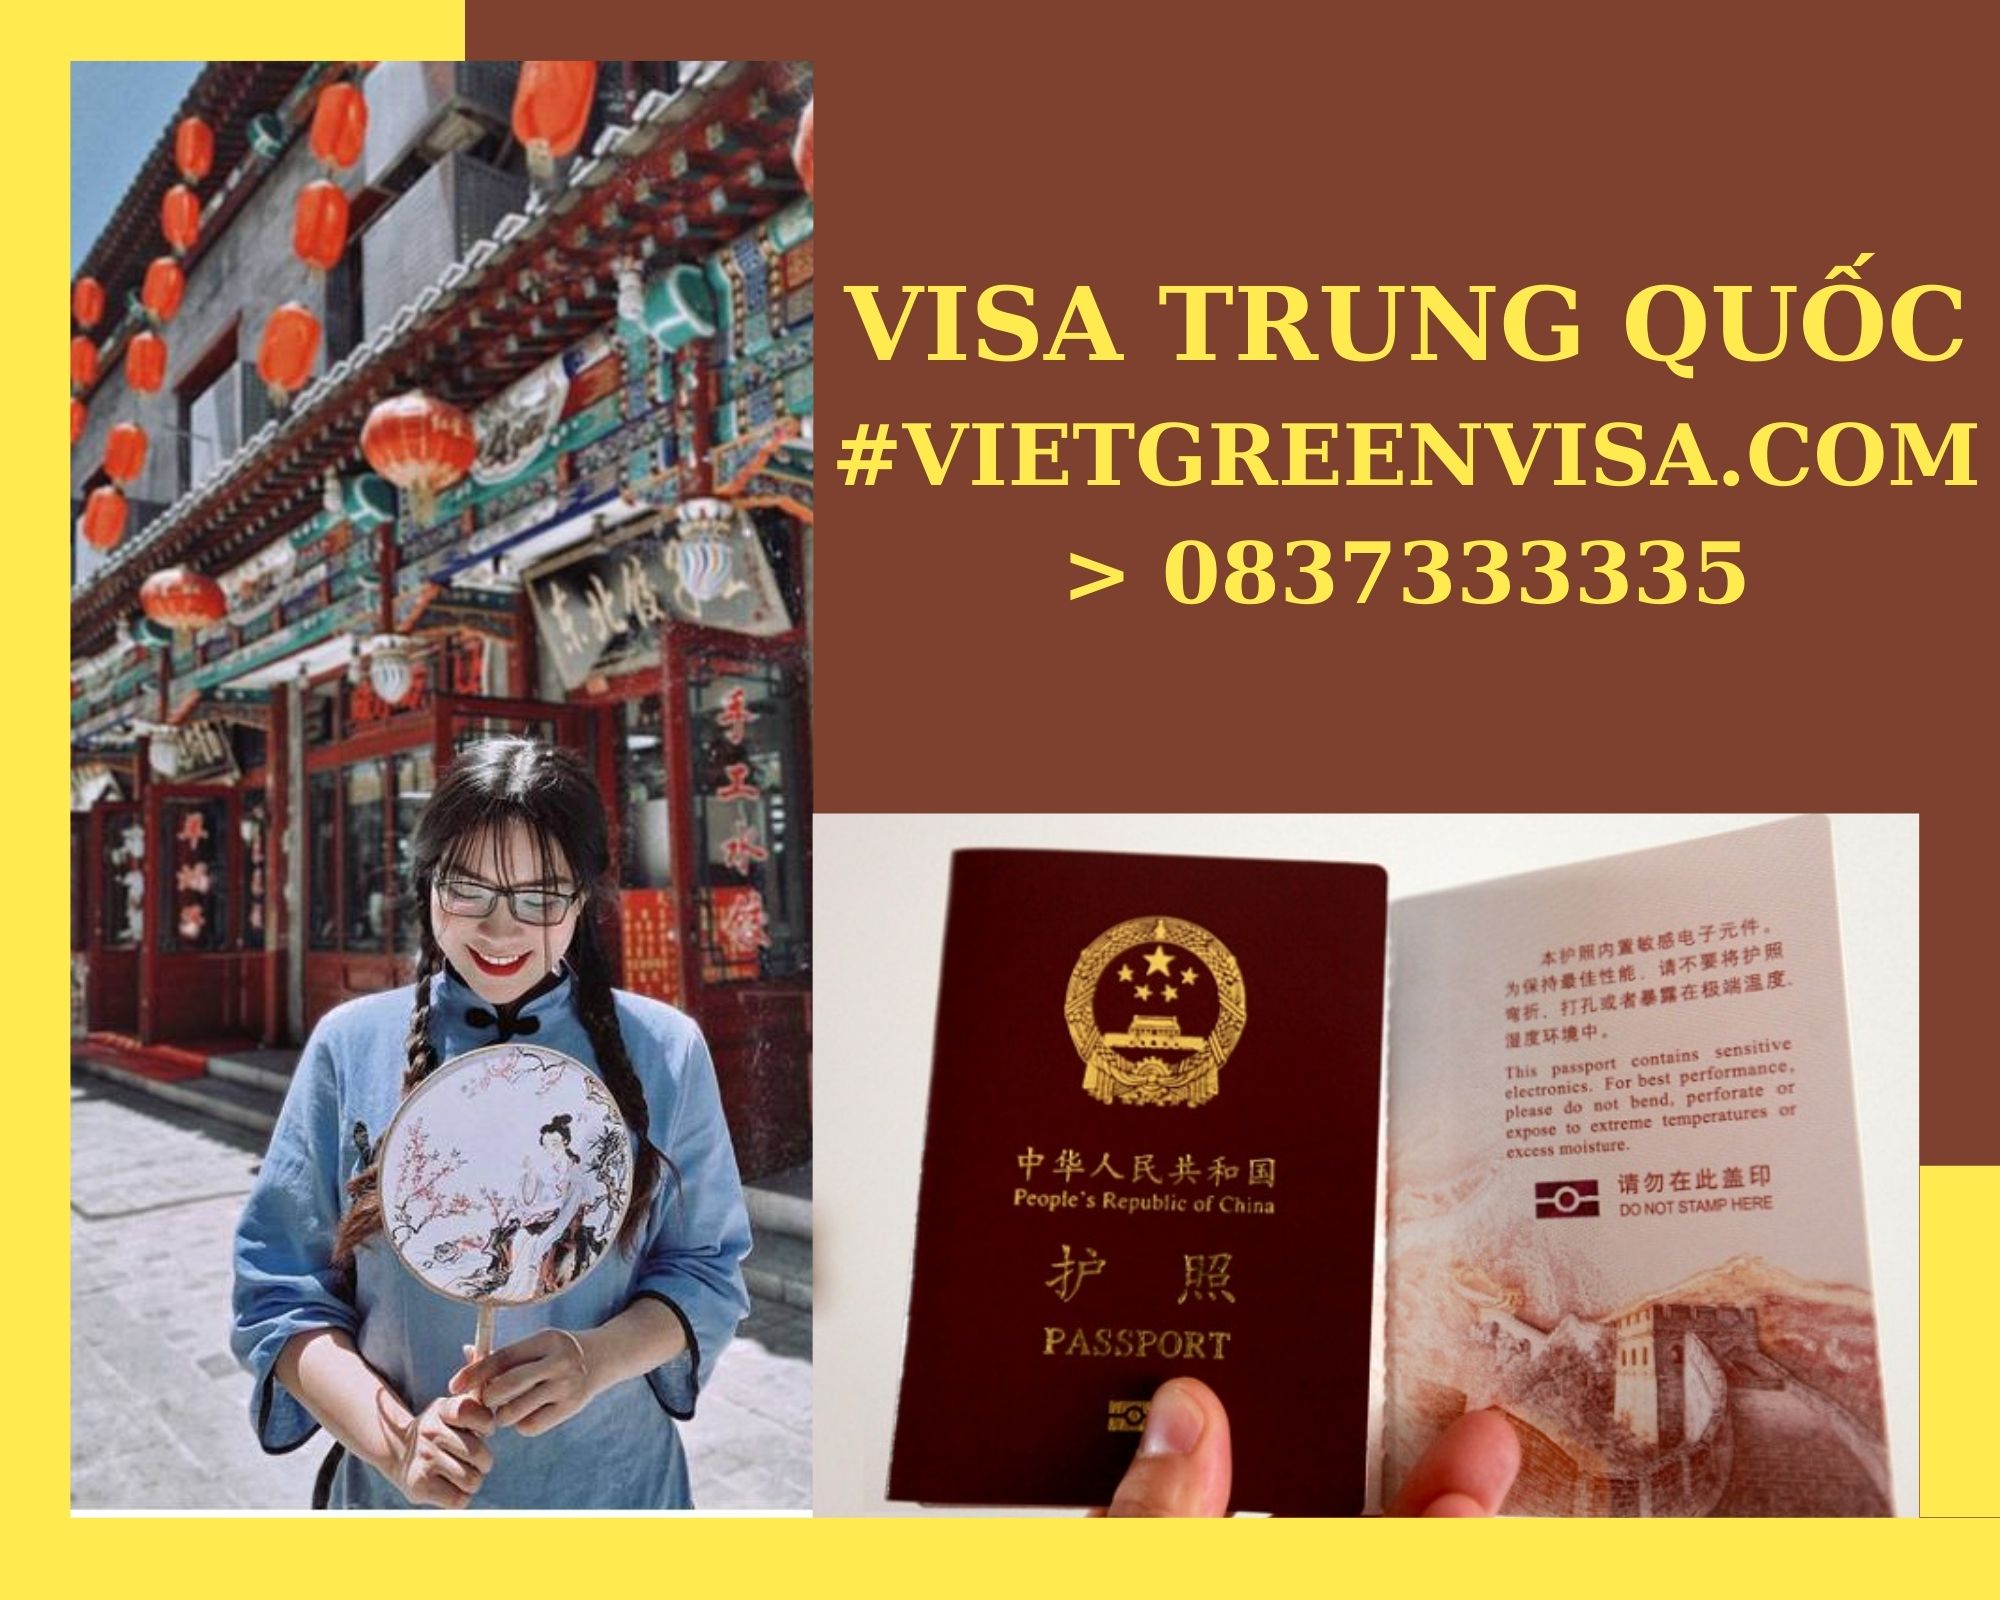 Dịch vụ visa Trung Quốc công tác giá rẻ. Du Lịch Xanh